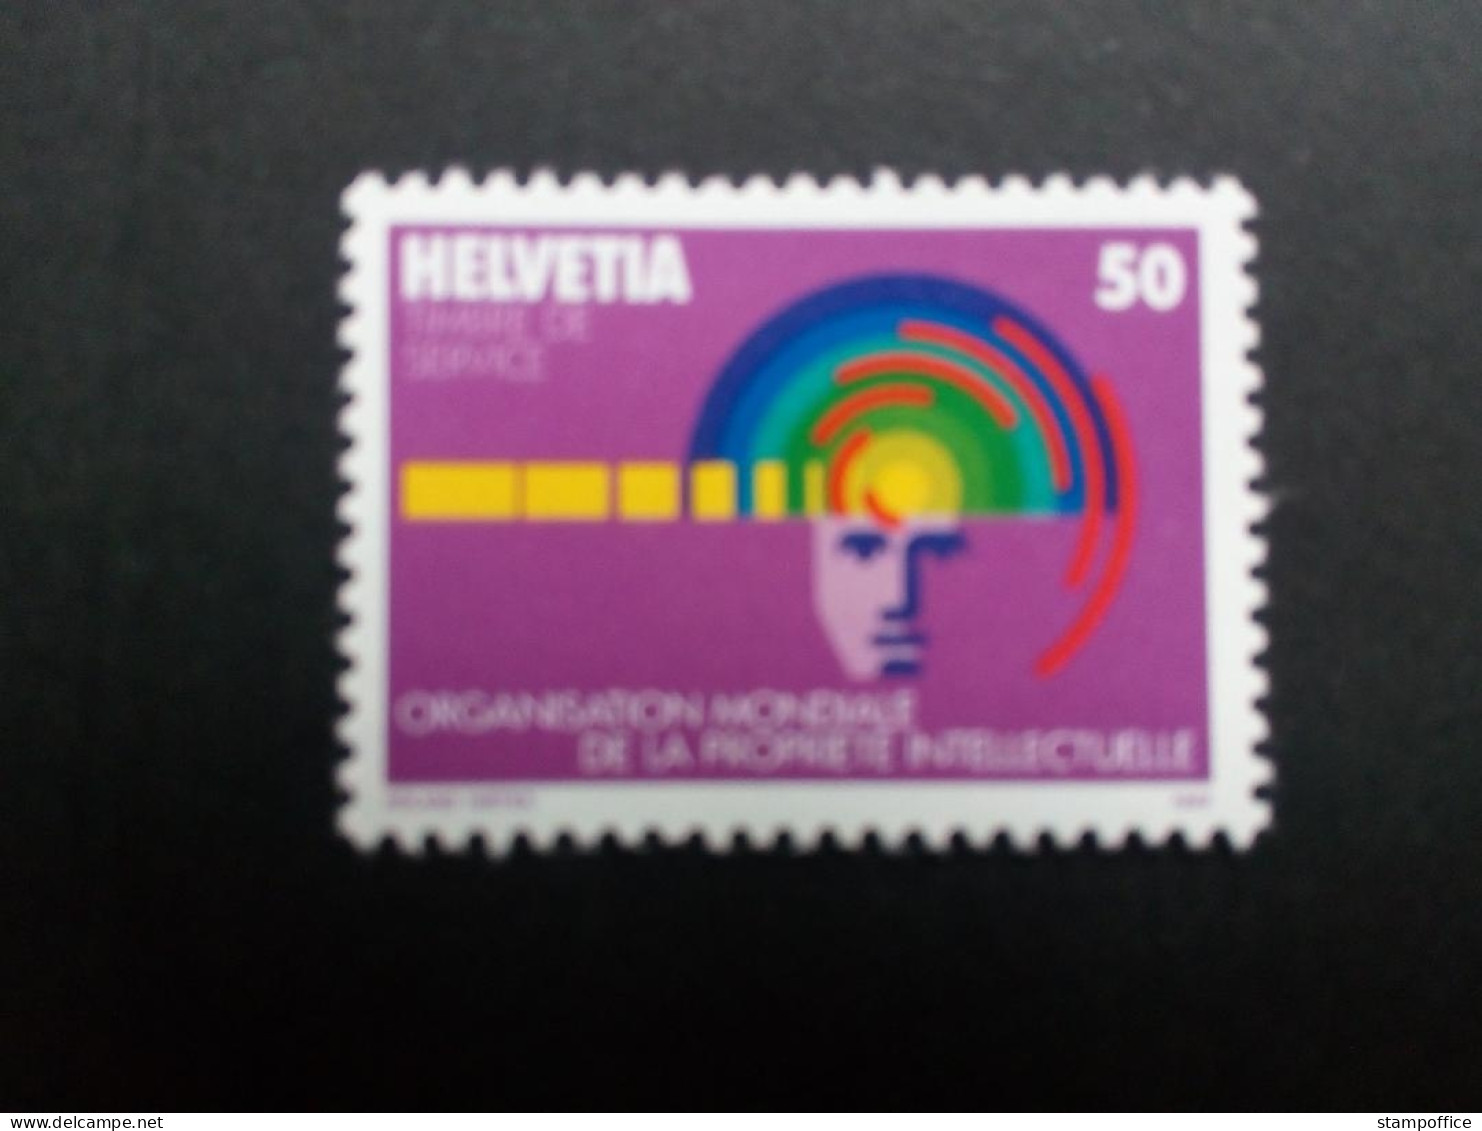 SCHWEIZ OMPI MI-NR. 5 POSTFRISCH(MINT) GEISTIGES EIGENTUM 1985 - Unused Stamps